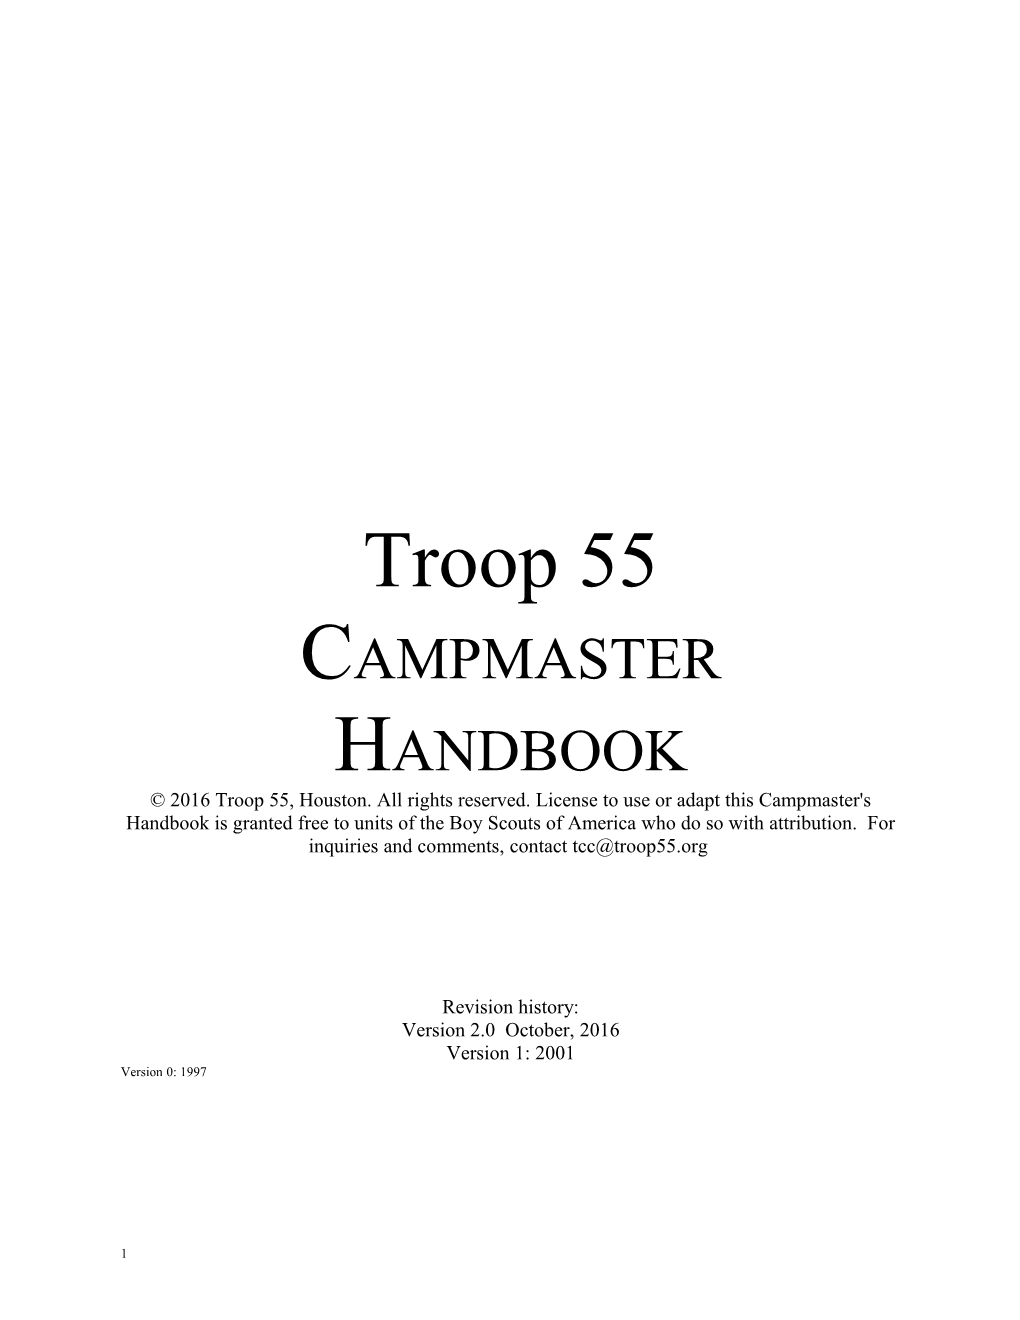 Campmaster Handbook